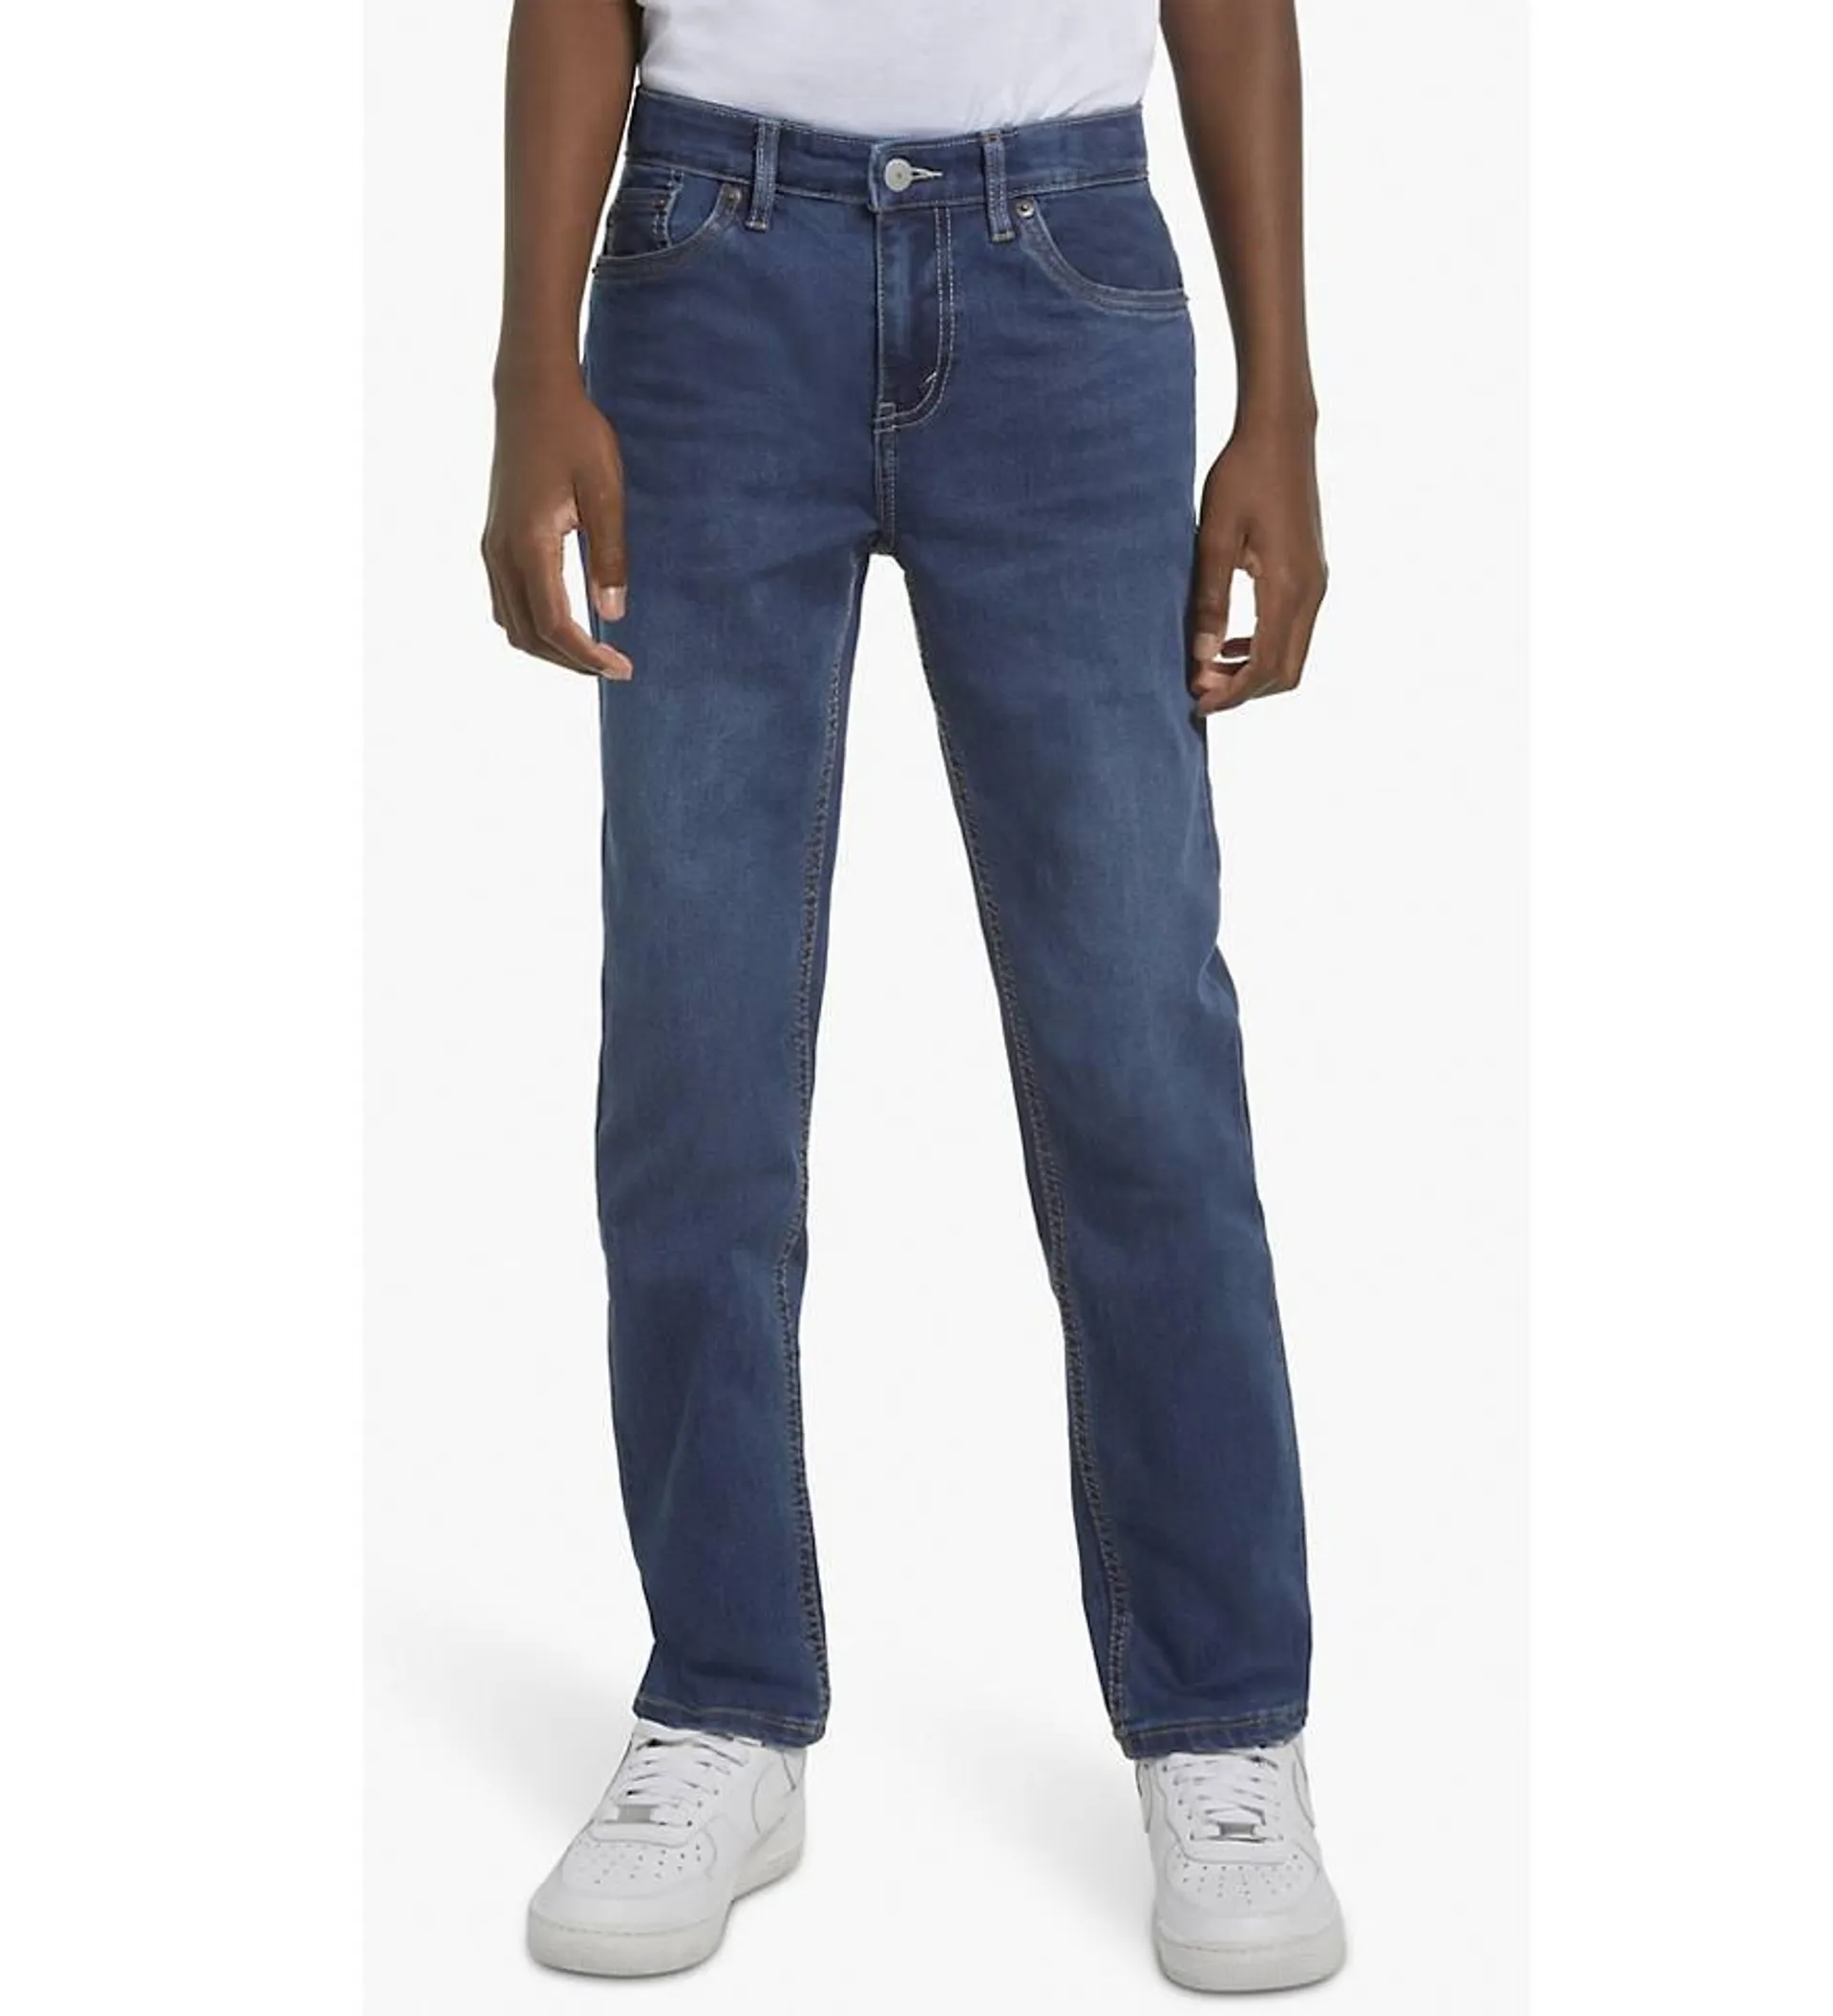 502™ Taper Fit Big Boys Jeans 8-20